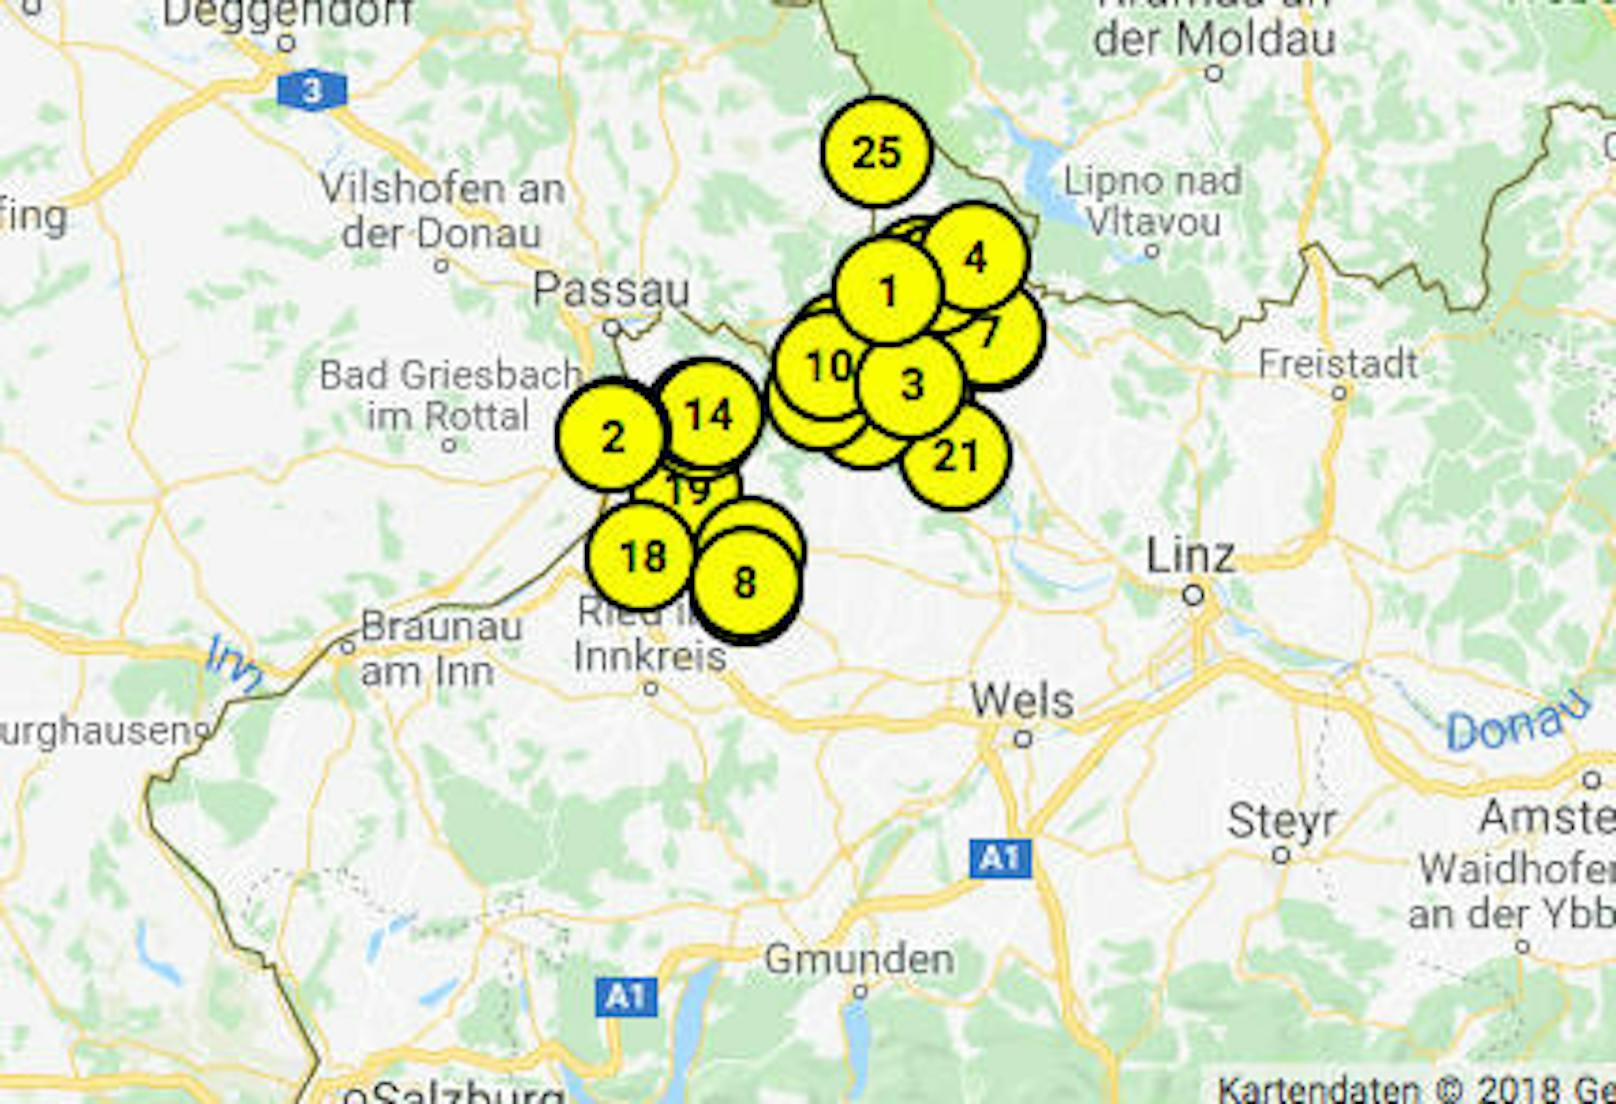 Laut ÖAMTC sind an der Grenze zu Bayern die teuersten Tankstellen (Karte zeigt Benzin-Preis an) in OÖ.